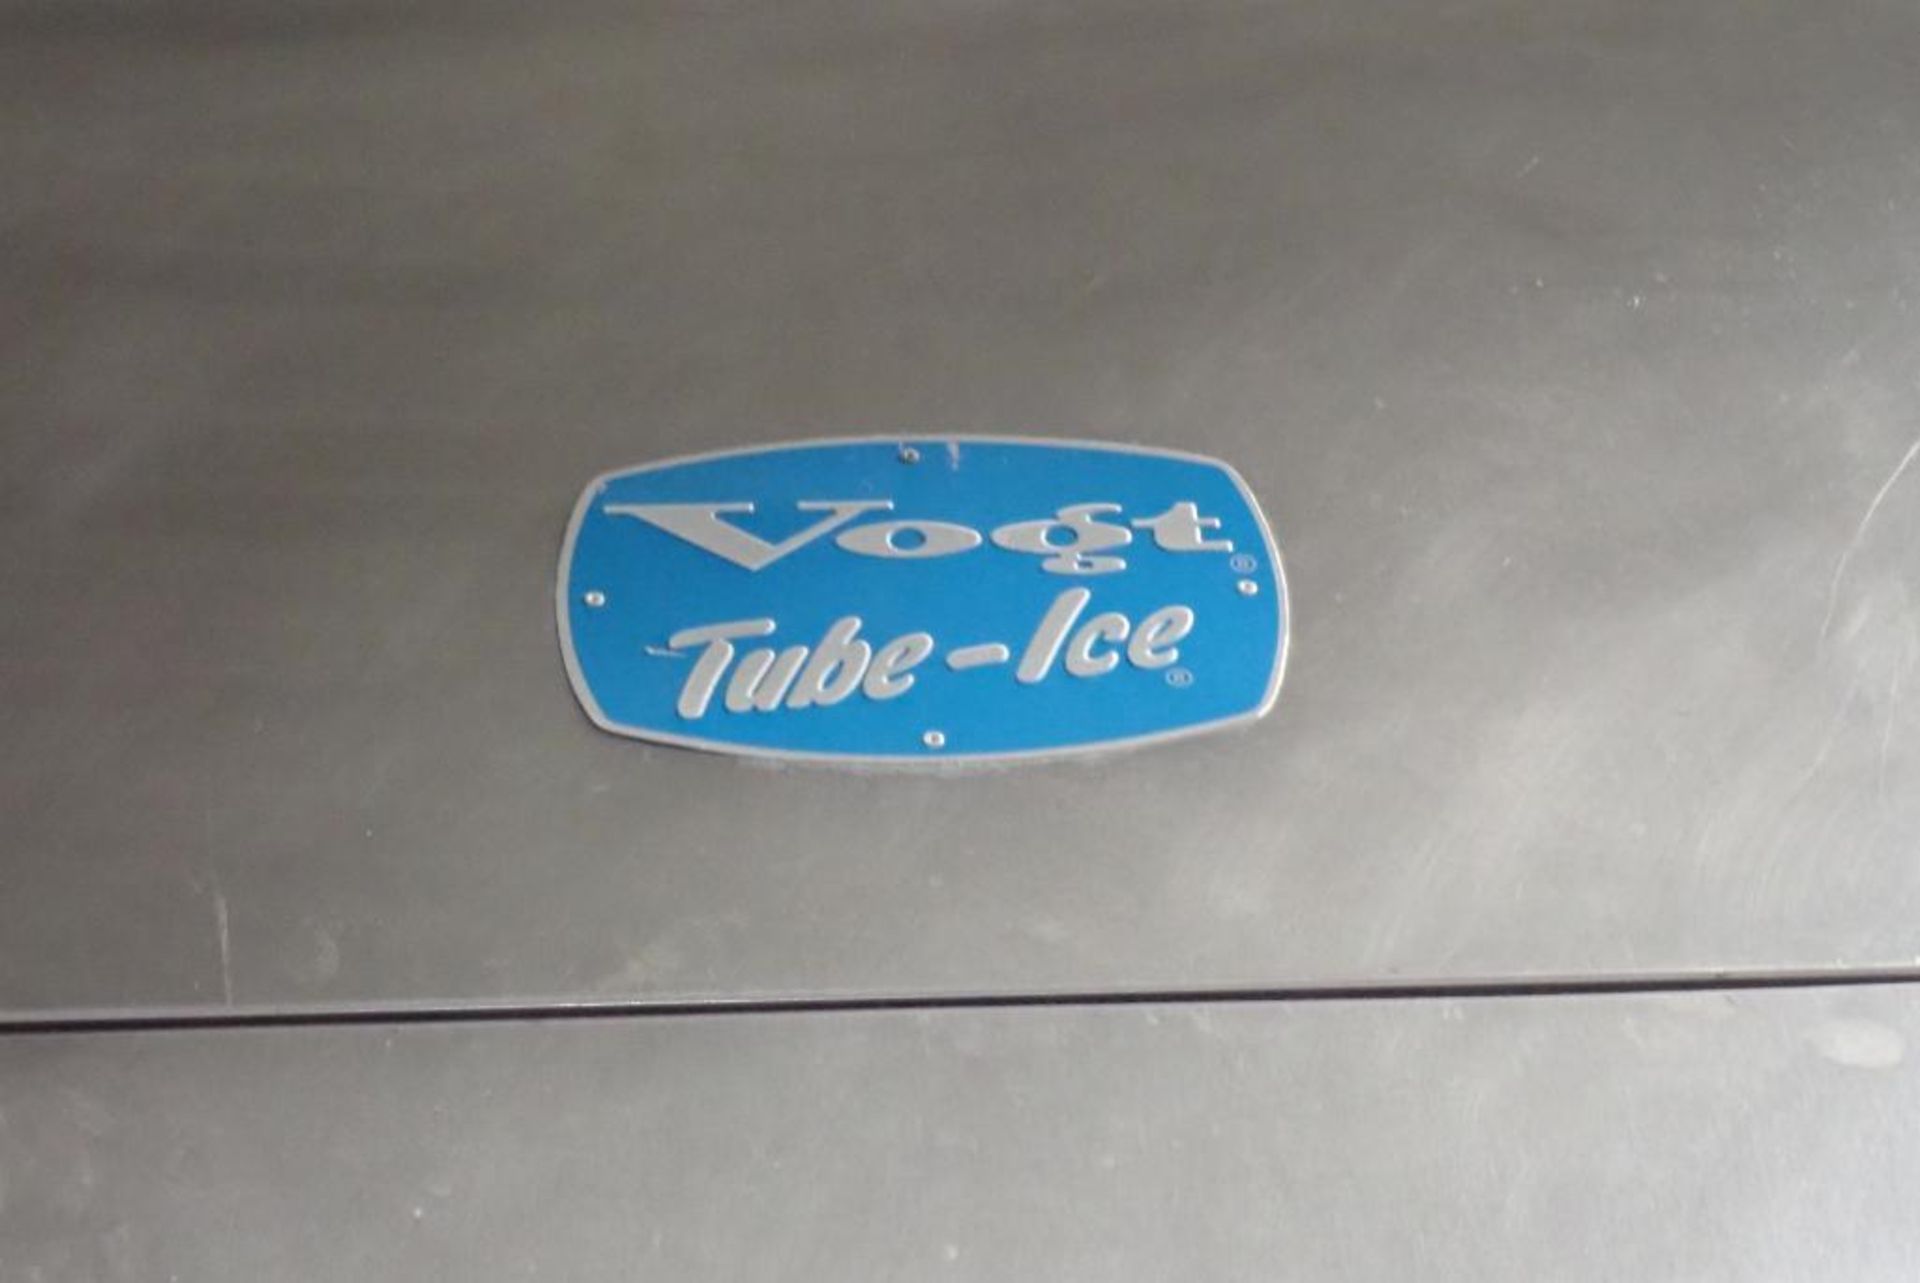 Vogt tube ice maker with Kolppenberg ice hopper - Image 8 of 15